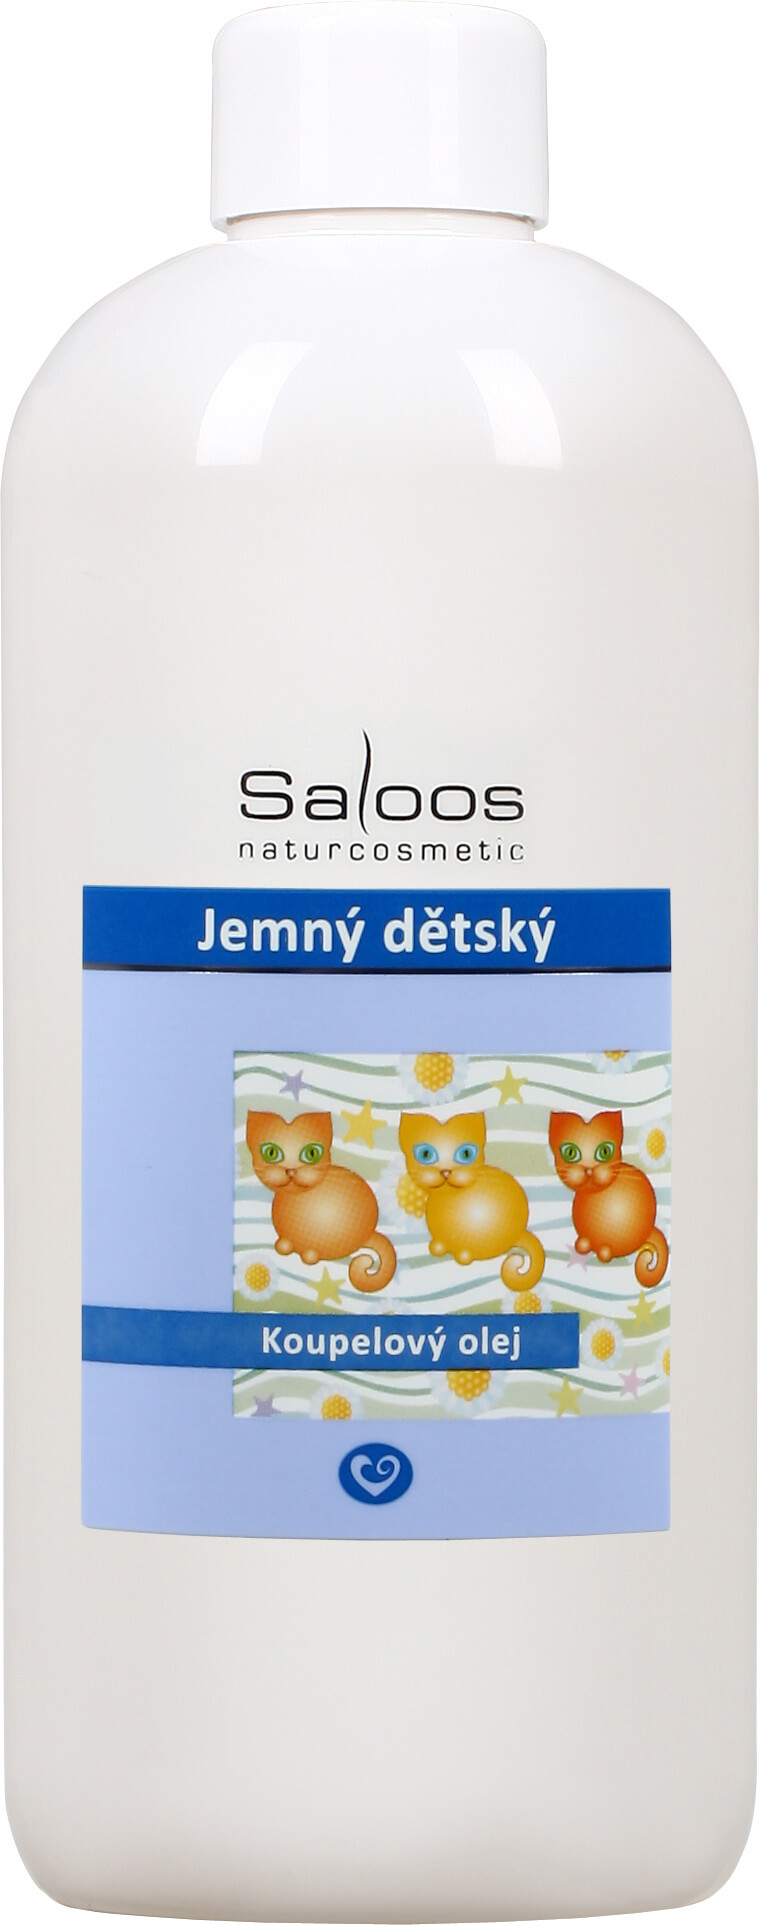 Zobrazit detail výrobku Saloos Koupelový olej - Jemný dětský 500 ml + 2 měsíce na vrácení zboží